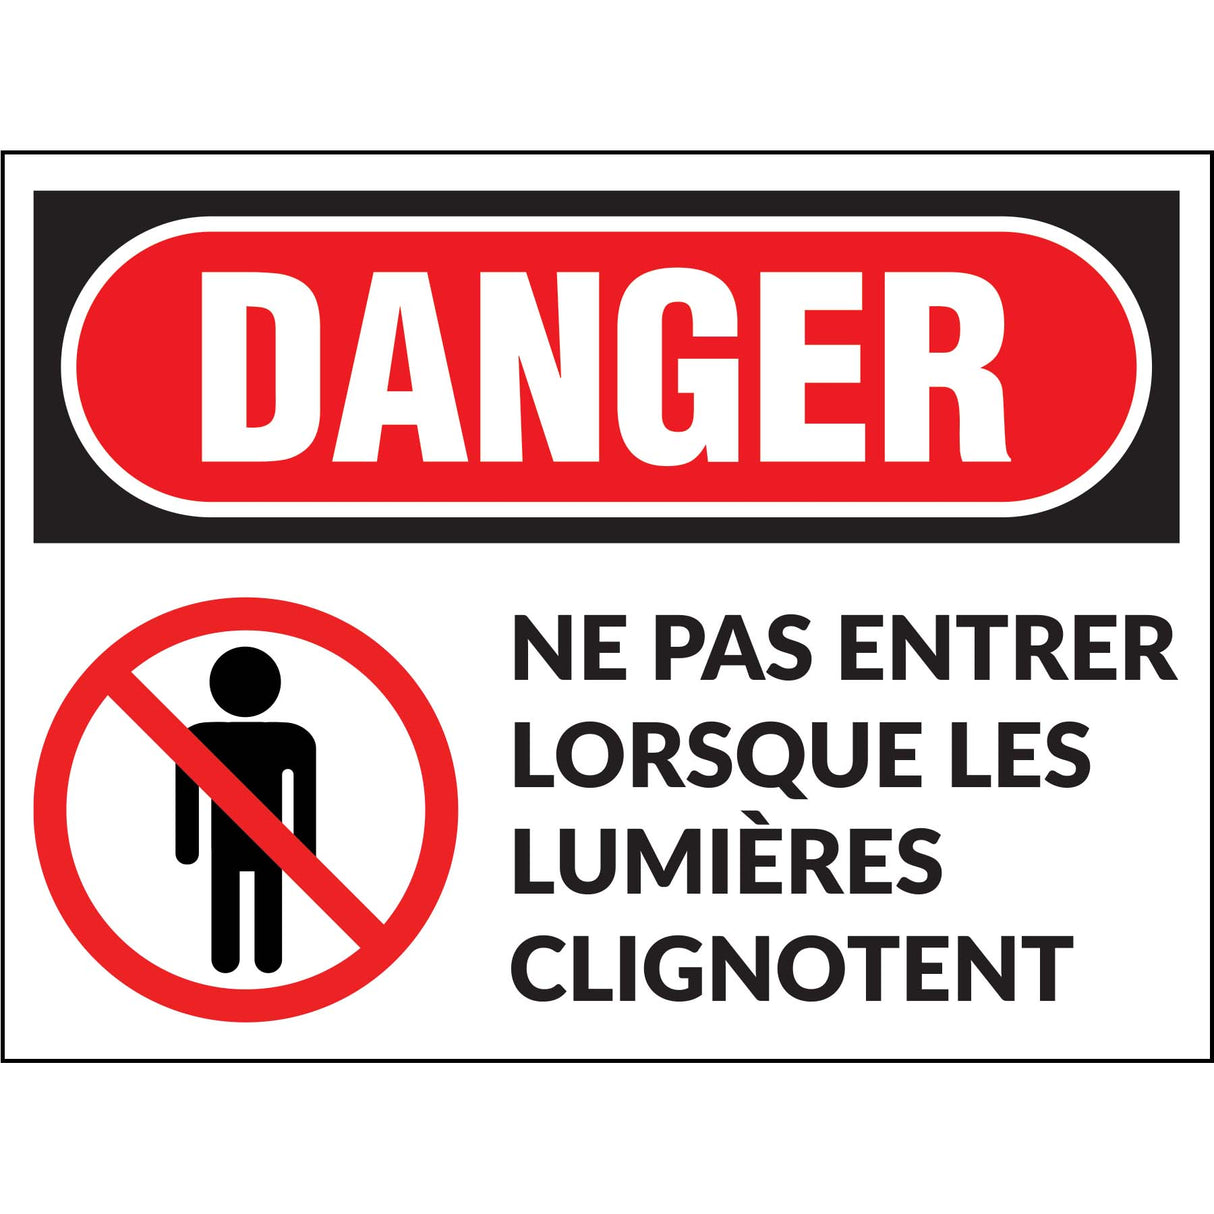 Danger - Ne pas entrer lorsque les lumières clignotent